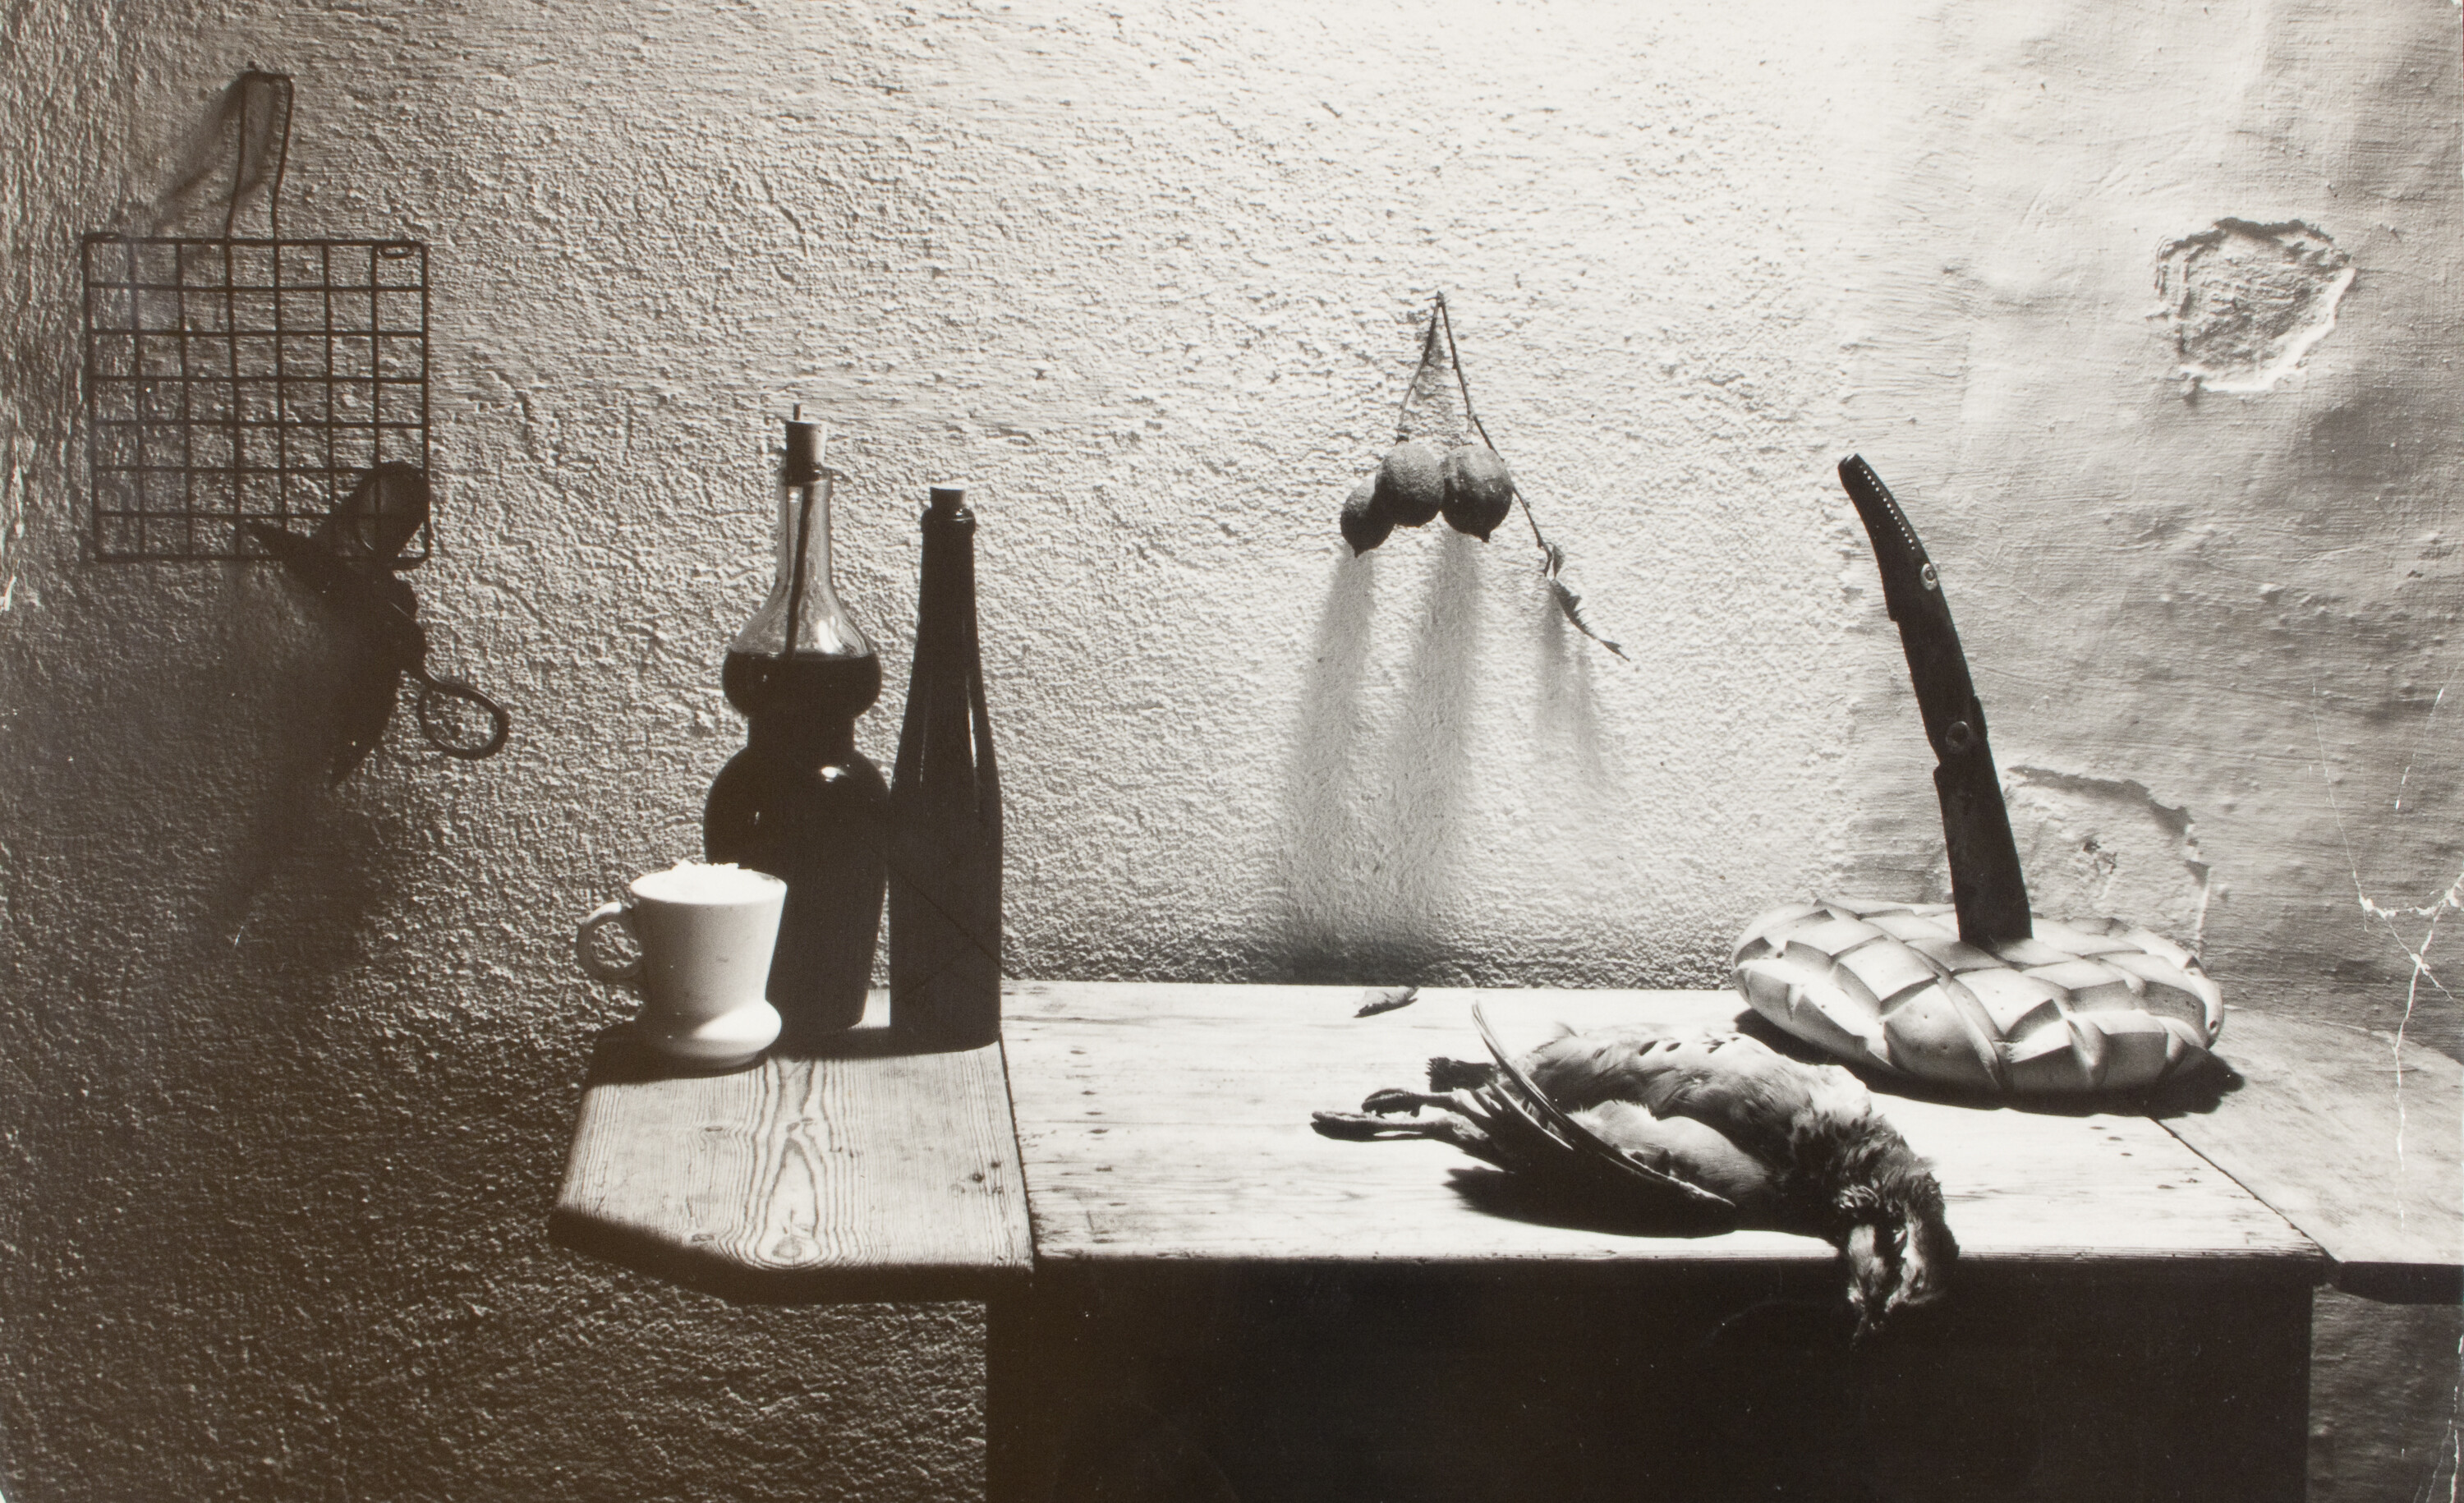 Для книги La caza de la perdiz roja (Охота на красную куропатку) Мигеля Делибеса, 1962. Фотограф Ориоль Маспонс